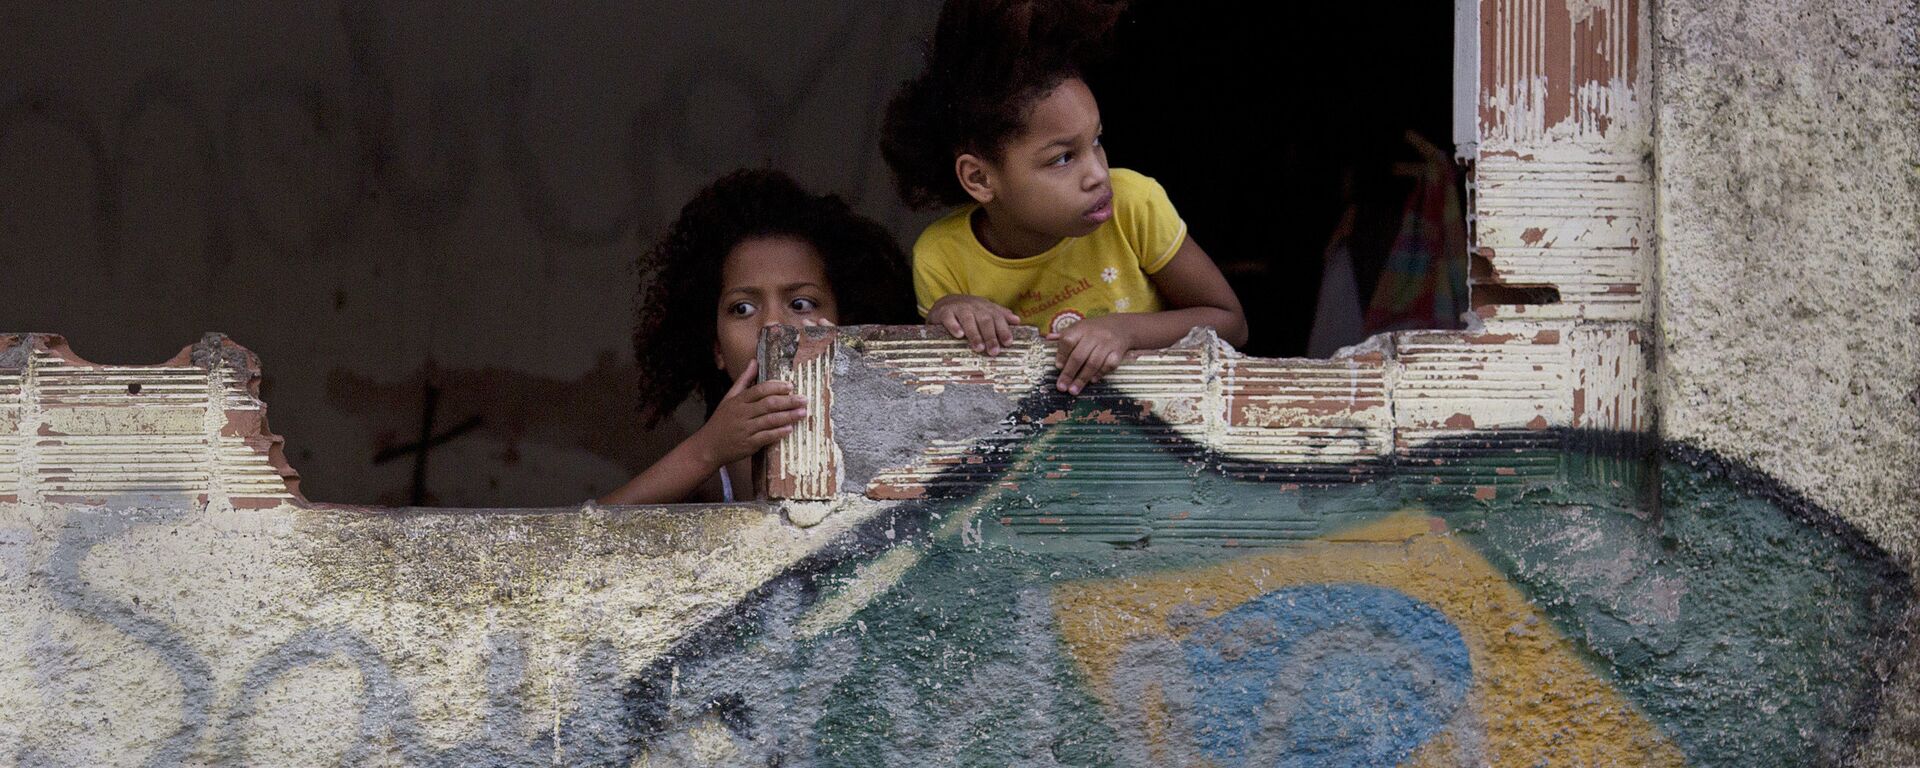 Garotas na favela de Manquinhos, no Rio de Janeiro, Brasil, assistem manifestação em prol da paz, exigindo o fim da violência entre traficantes e policiais.  - Sputnik Brasil, 1920, 06.04.2021